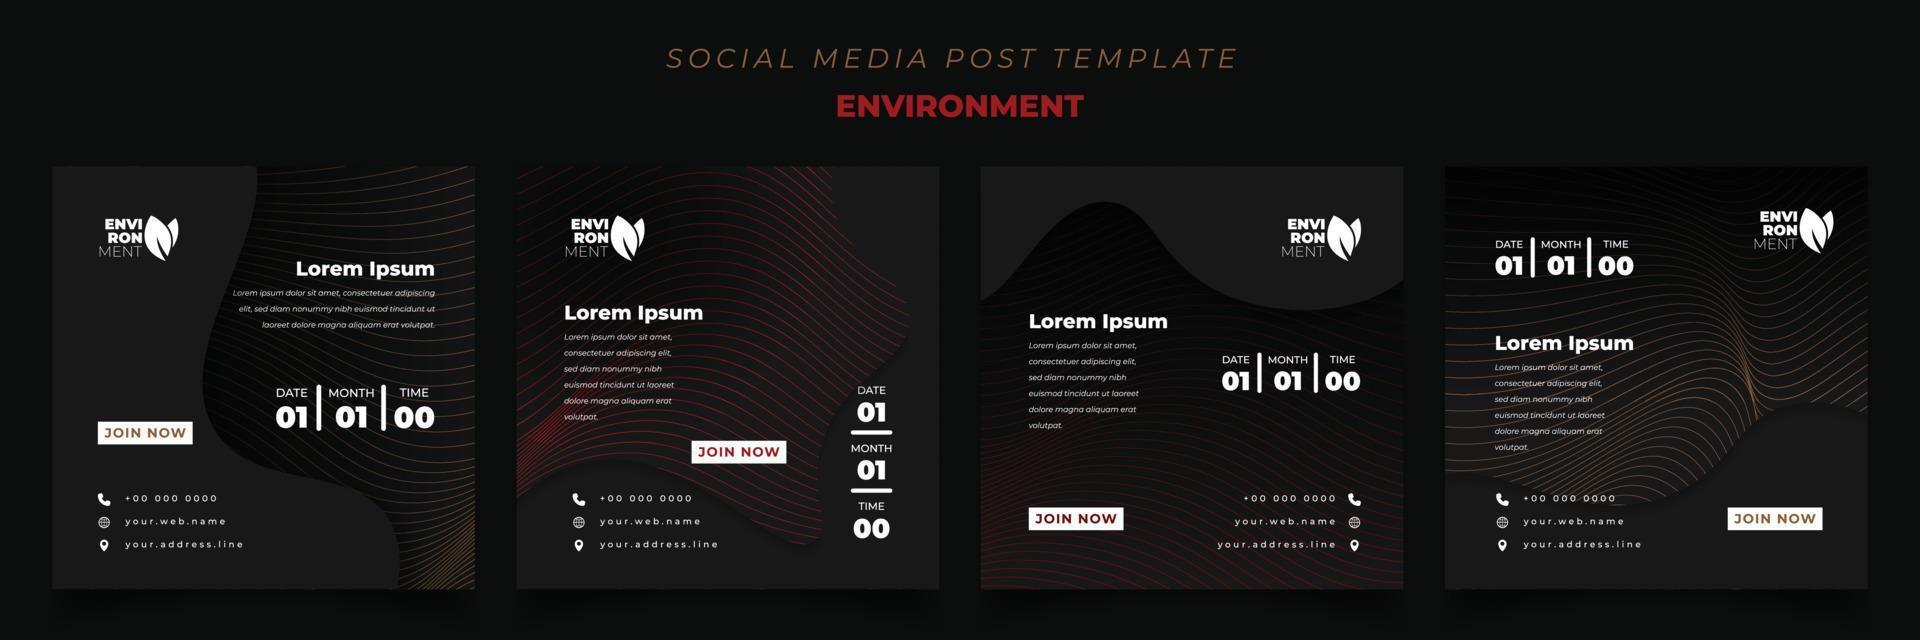 conjunto de plantillas de publicaciones en redes sociales con líneas en fondo oscuro para el diseño del entorno vector